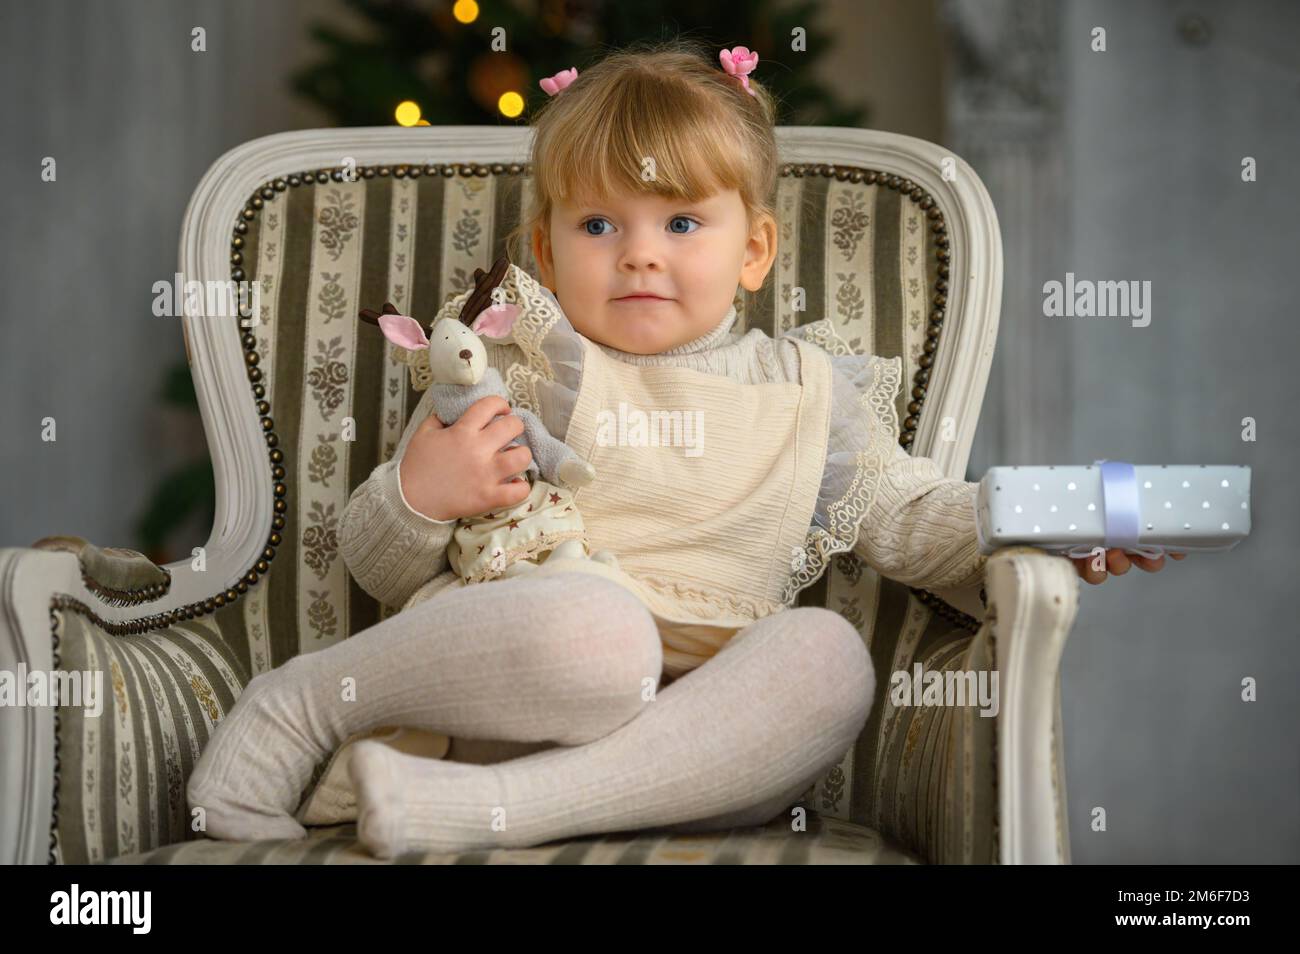 Petite fille drôle ayant le plaisir dans une chaise à l'avant De l'arbre de Noël Banque D'Images